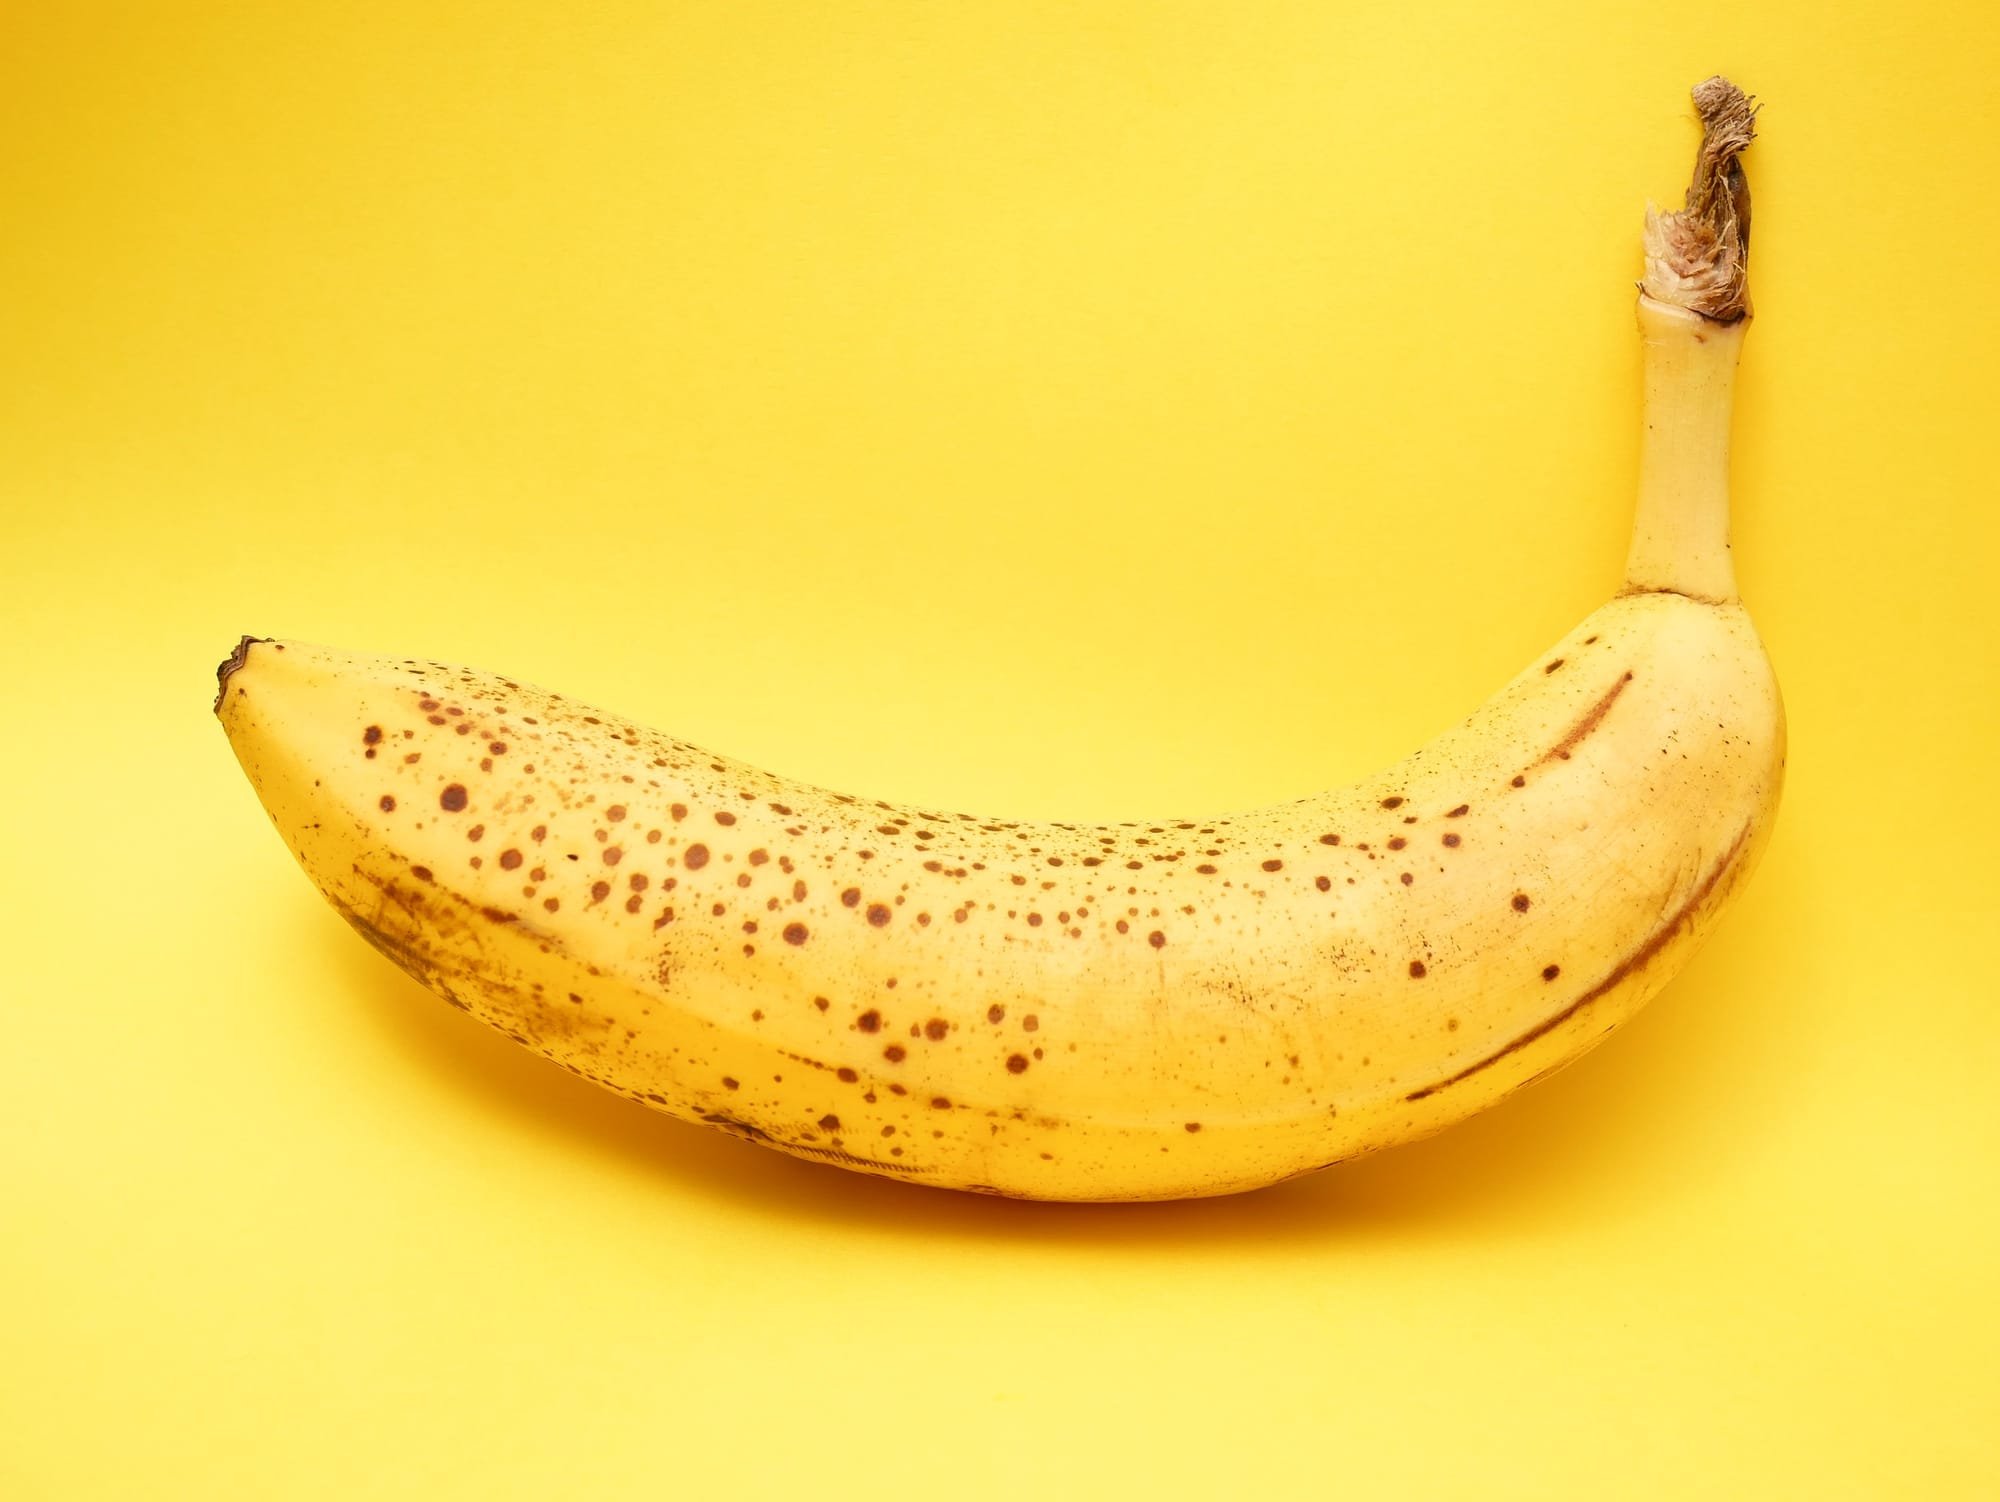 ماذا تعني النقاط السوداء في الموز؟